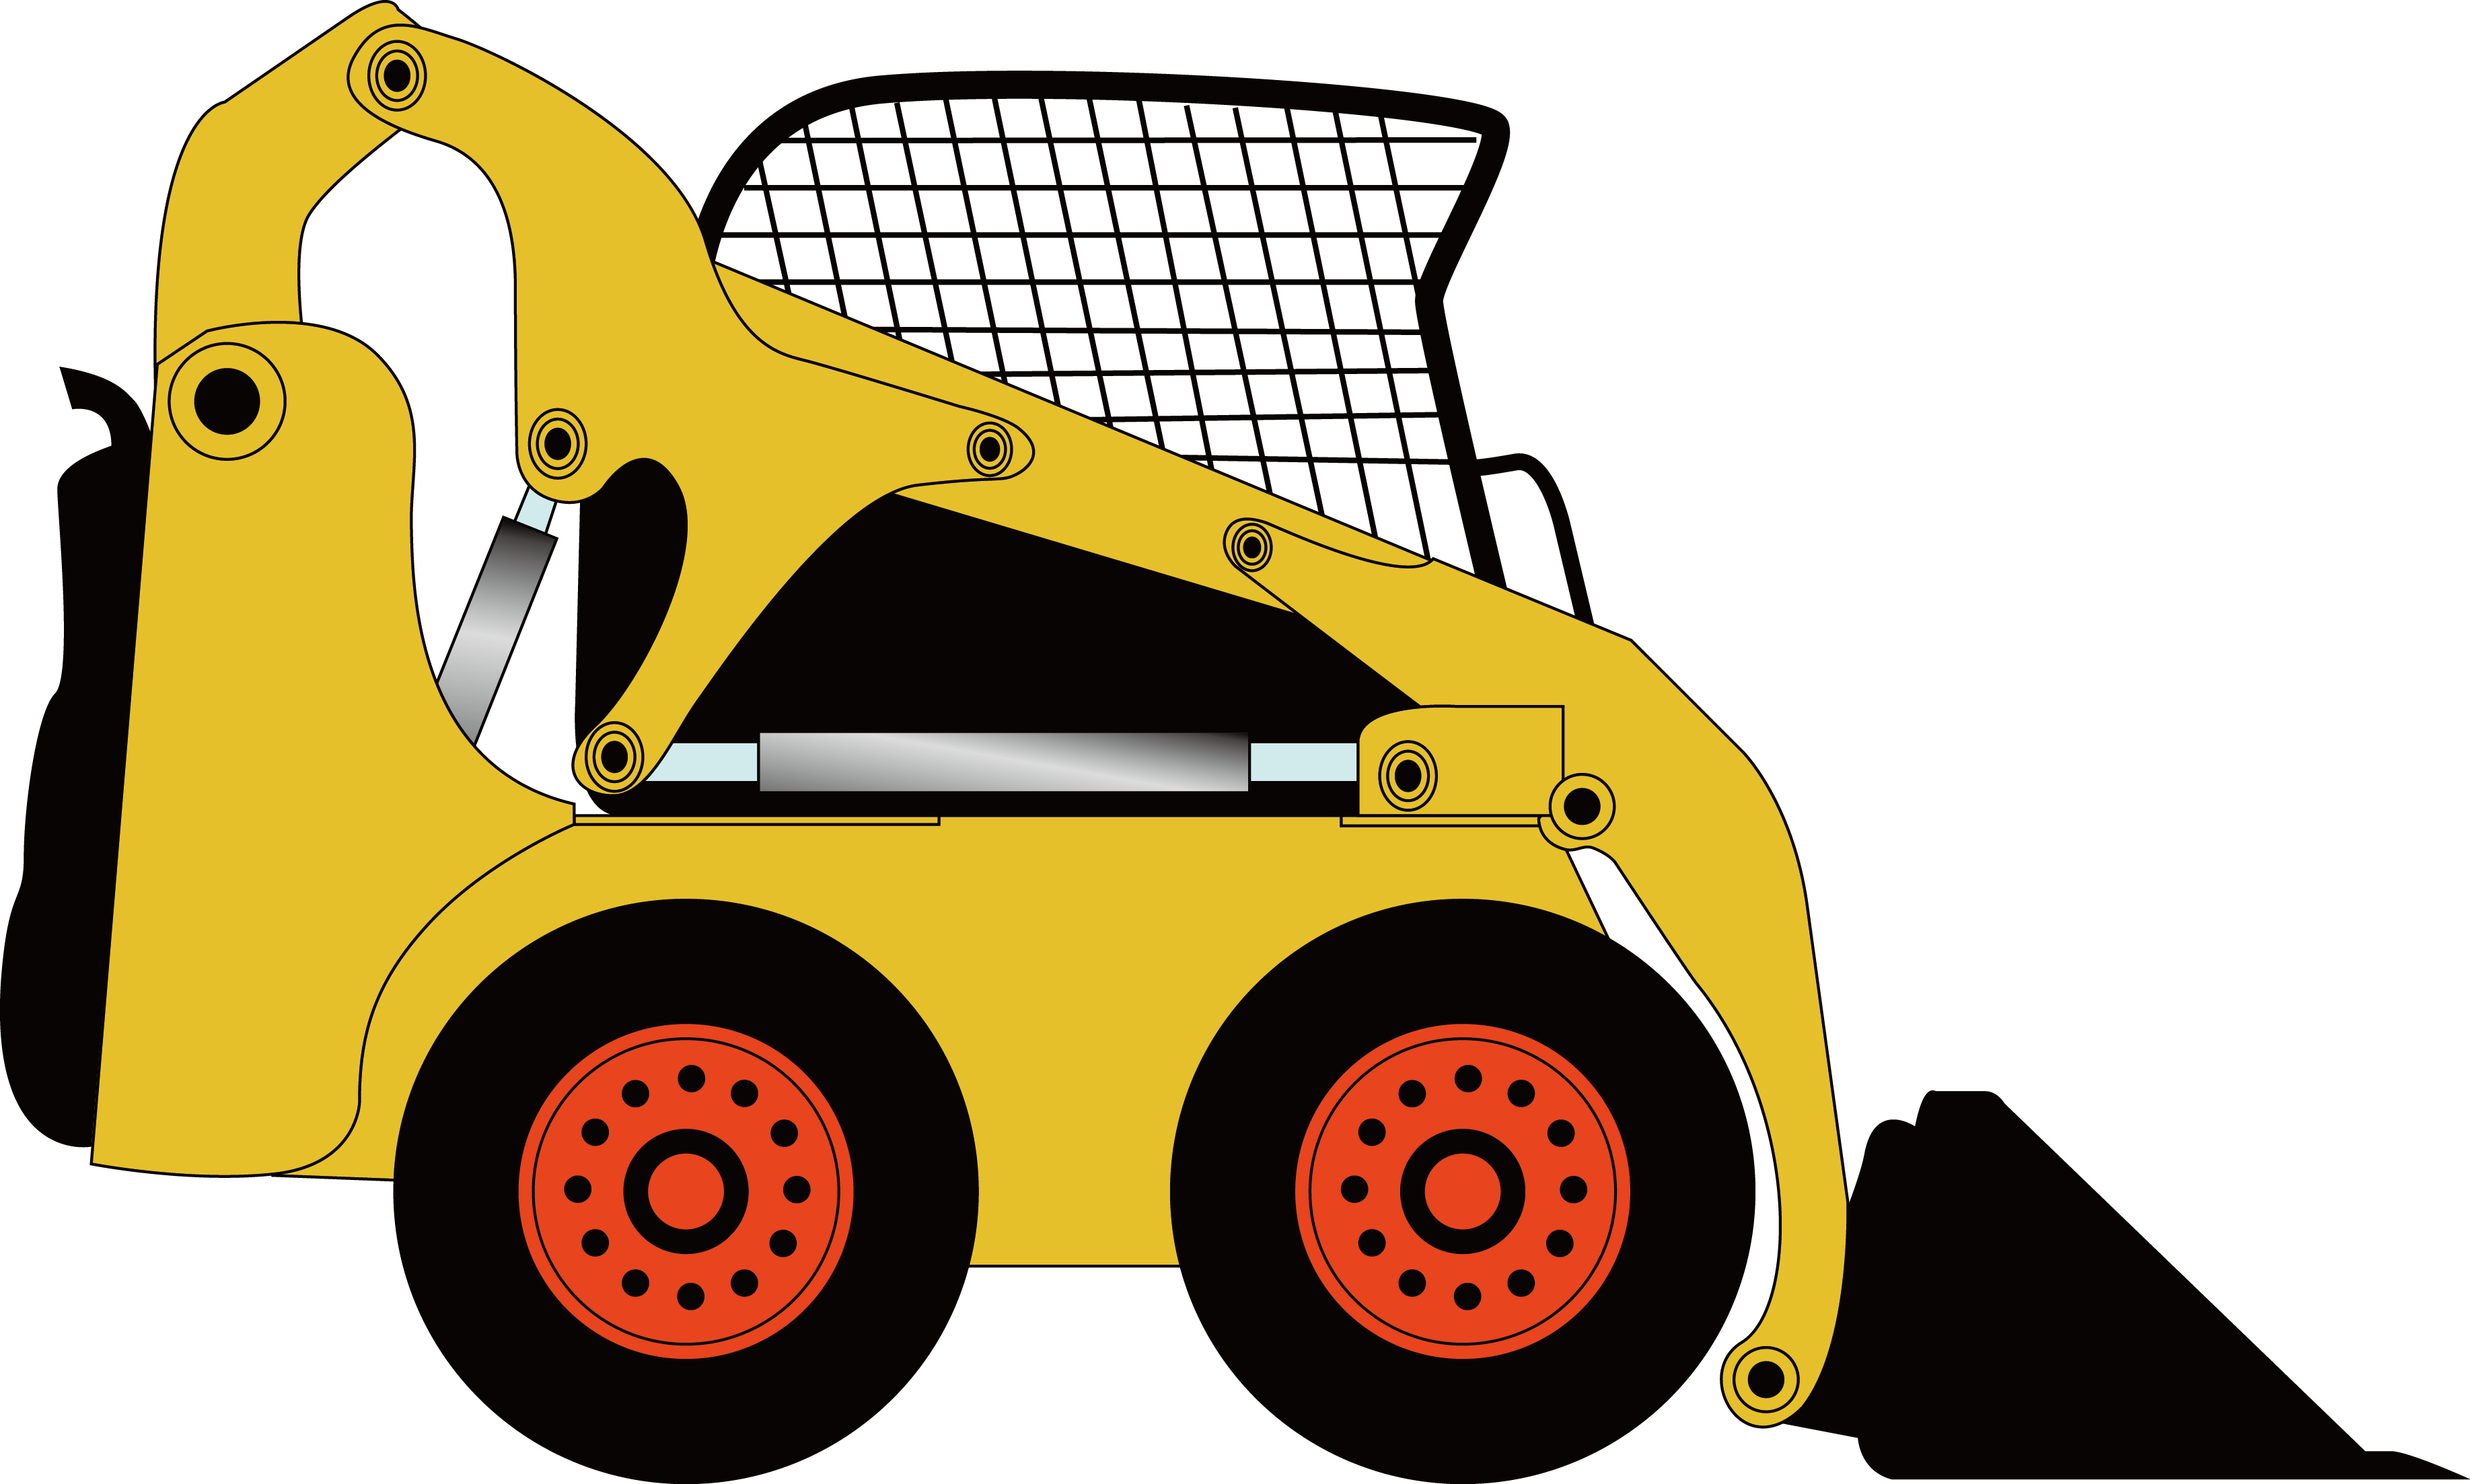 Excavator clipart mechanical. Shovel cartoon poster municipal